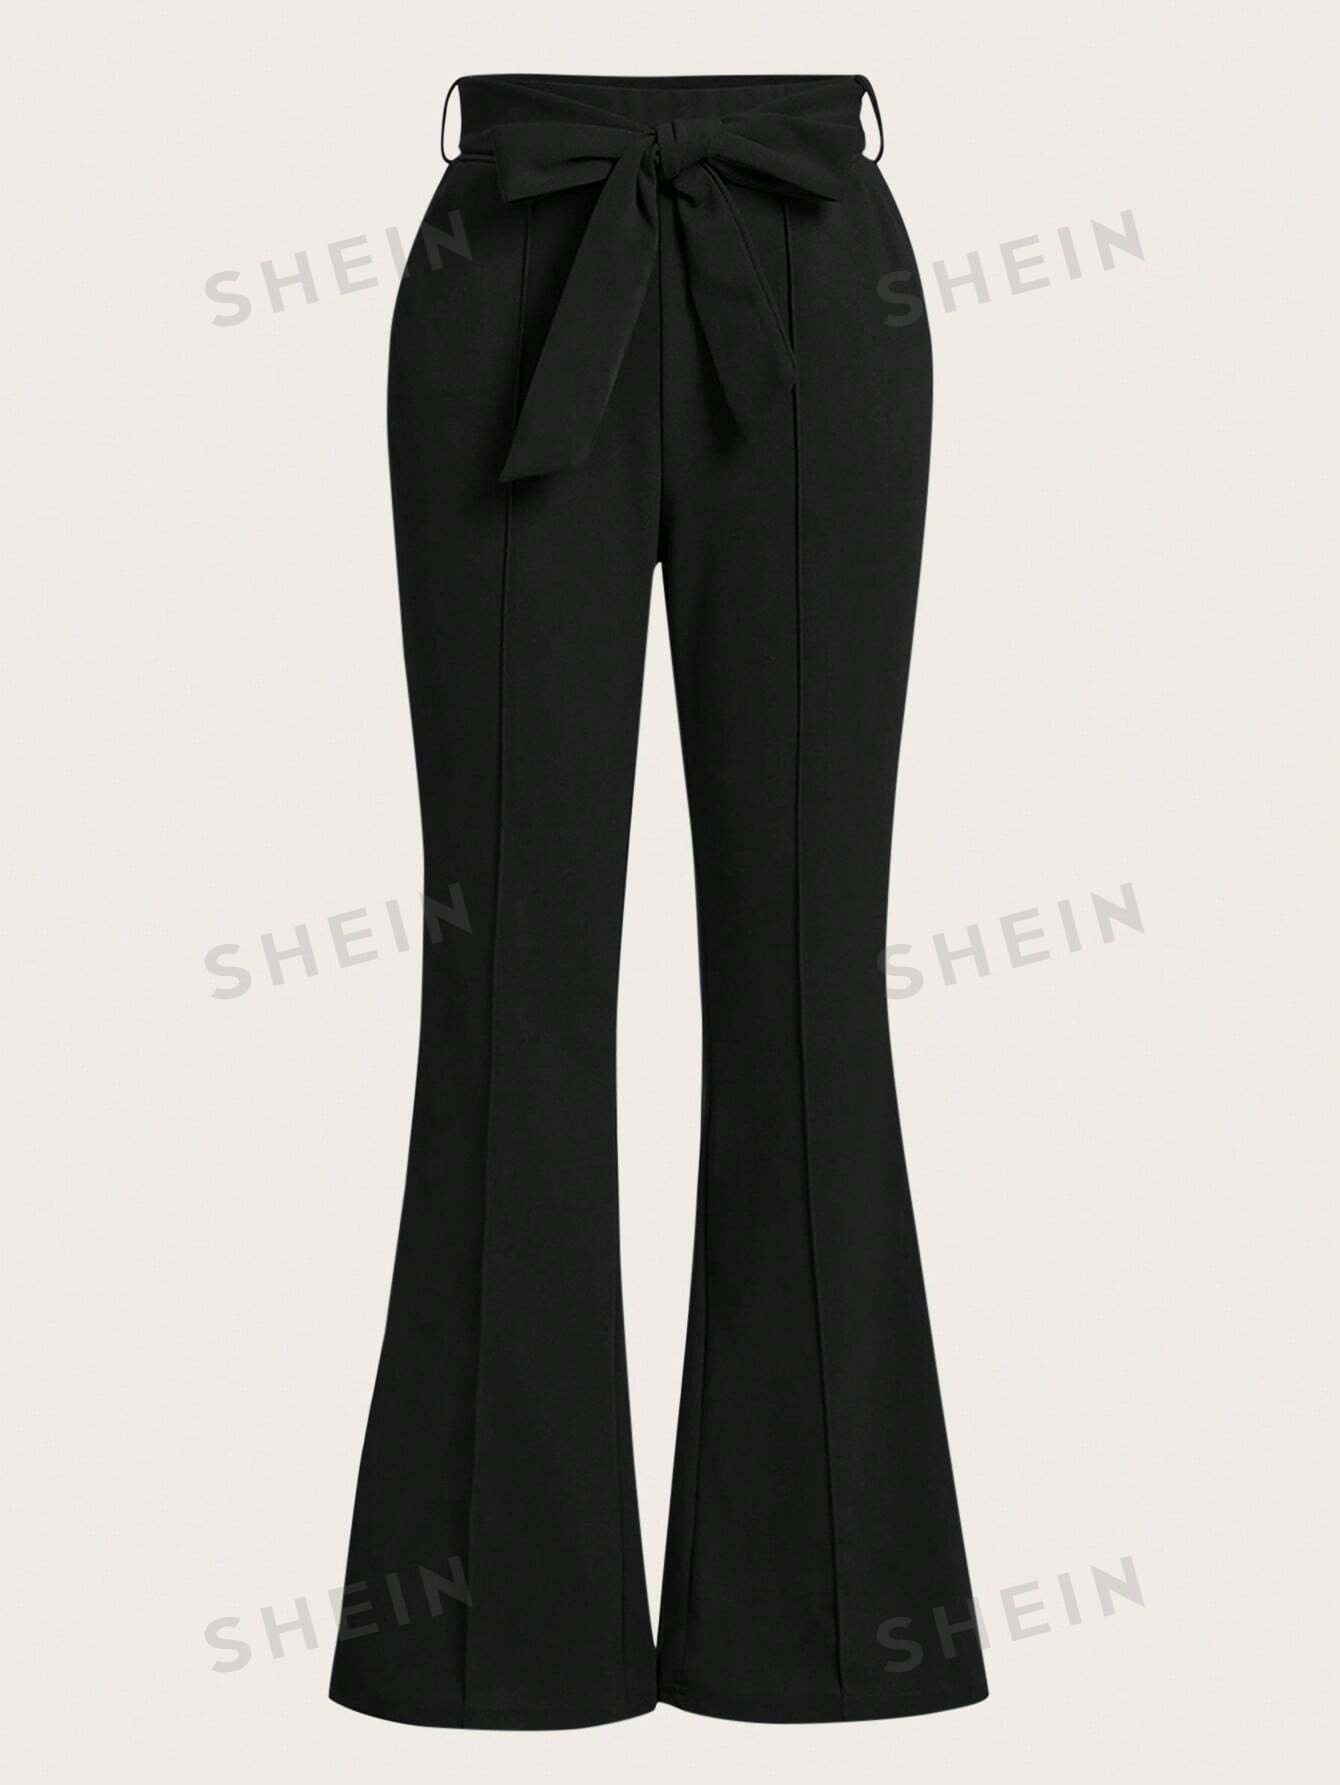 SHEIN Clasi Женские брюки однотонного цвета с расклешенным низом, черный женские расклешенные брюки на шнурке 3 цвета